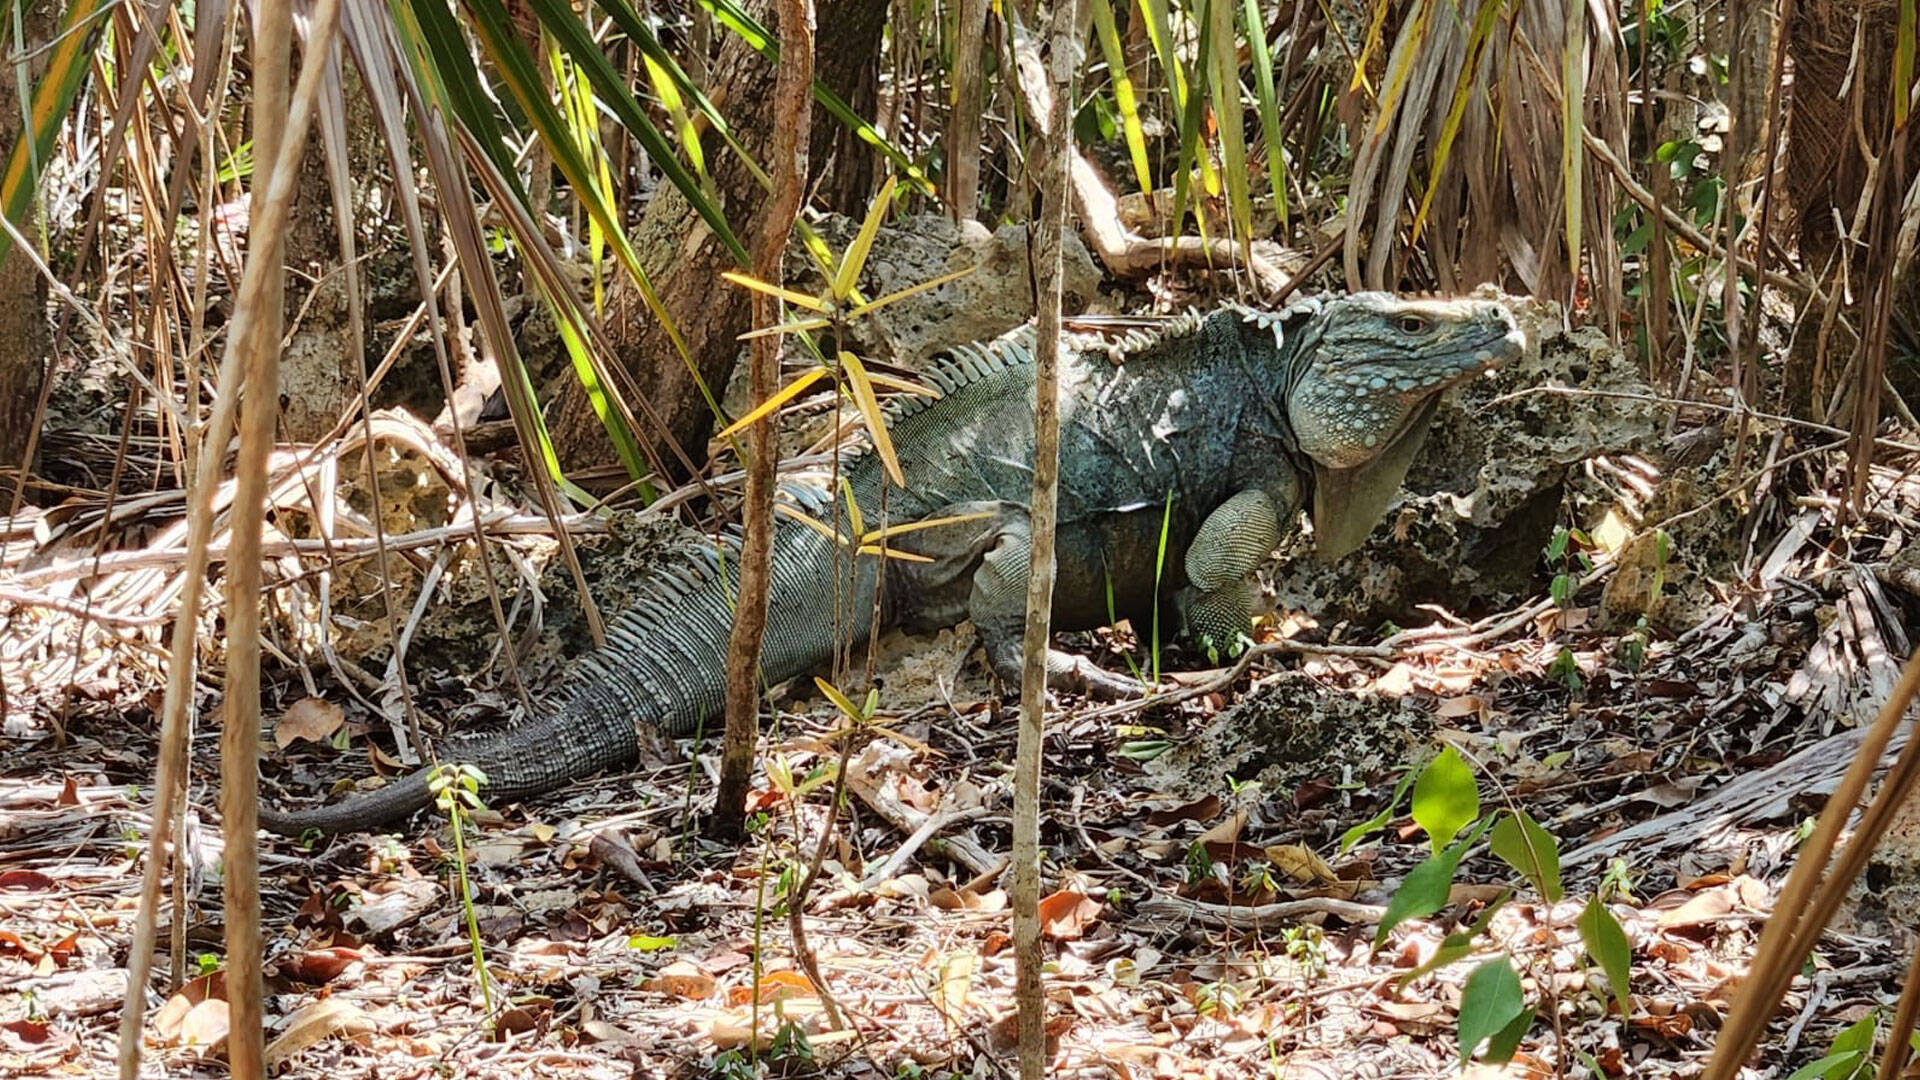 https://cdn.aucklandunlimited.com/zoo/assets/media/cayman-islands-iguana-gallery-4.jpg